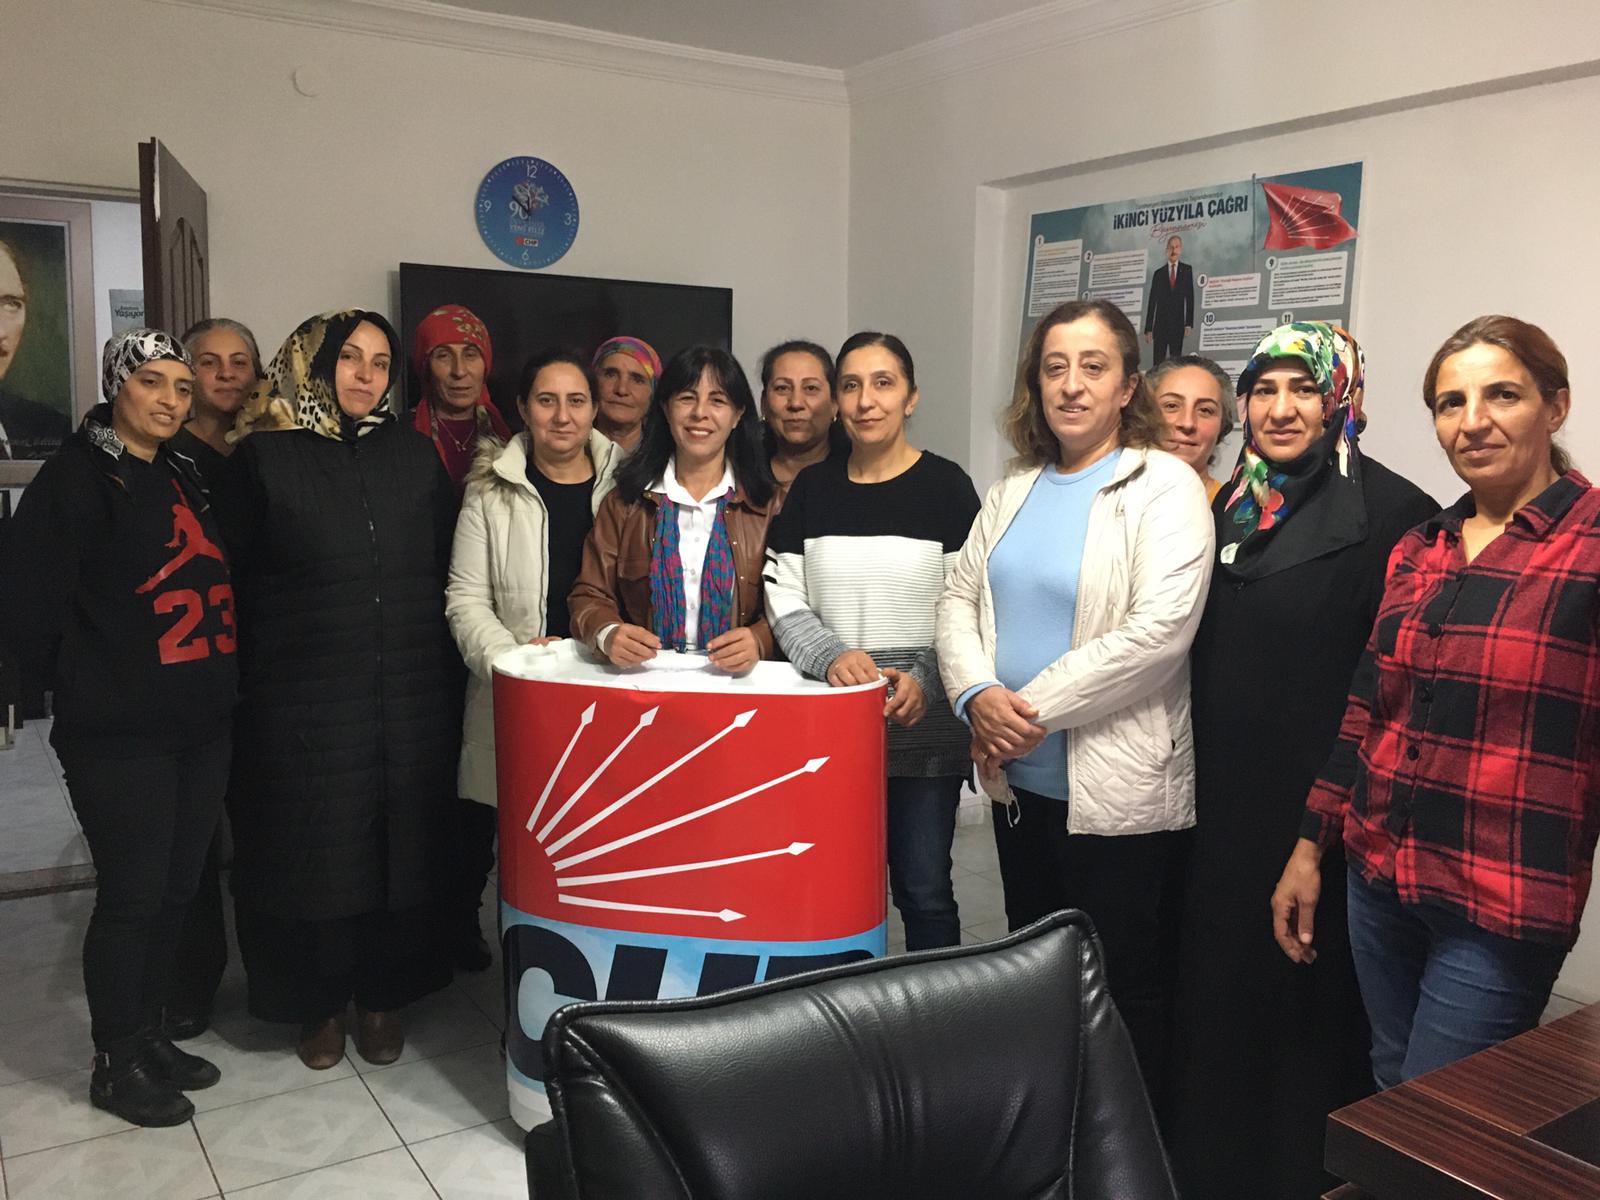 CHP Kadın Kolları’ndan 25 Kasım açıklaması